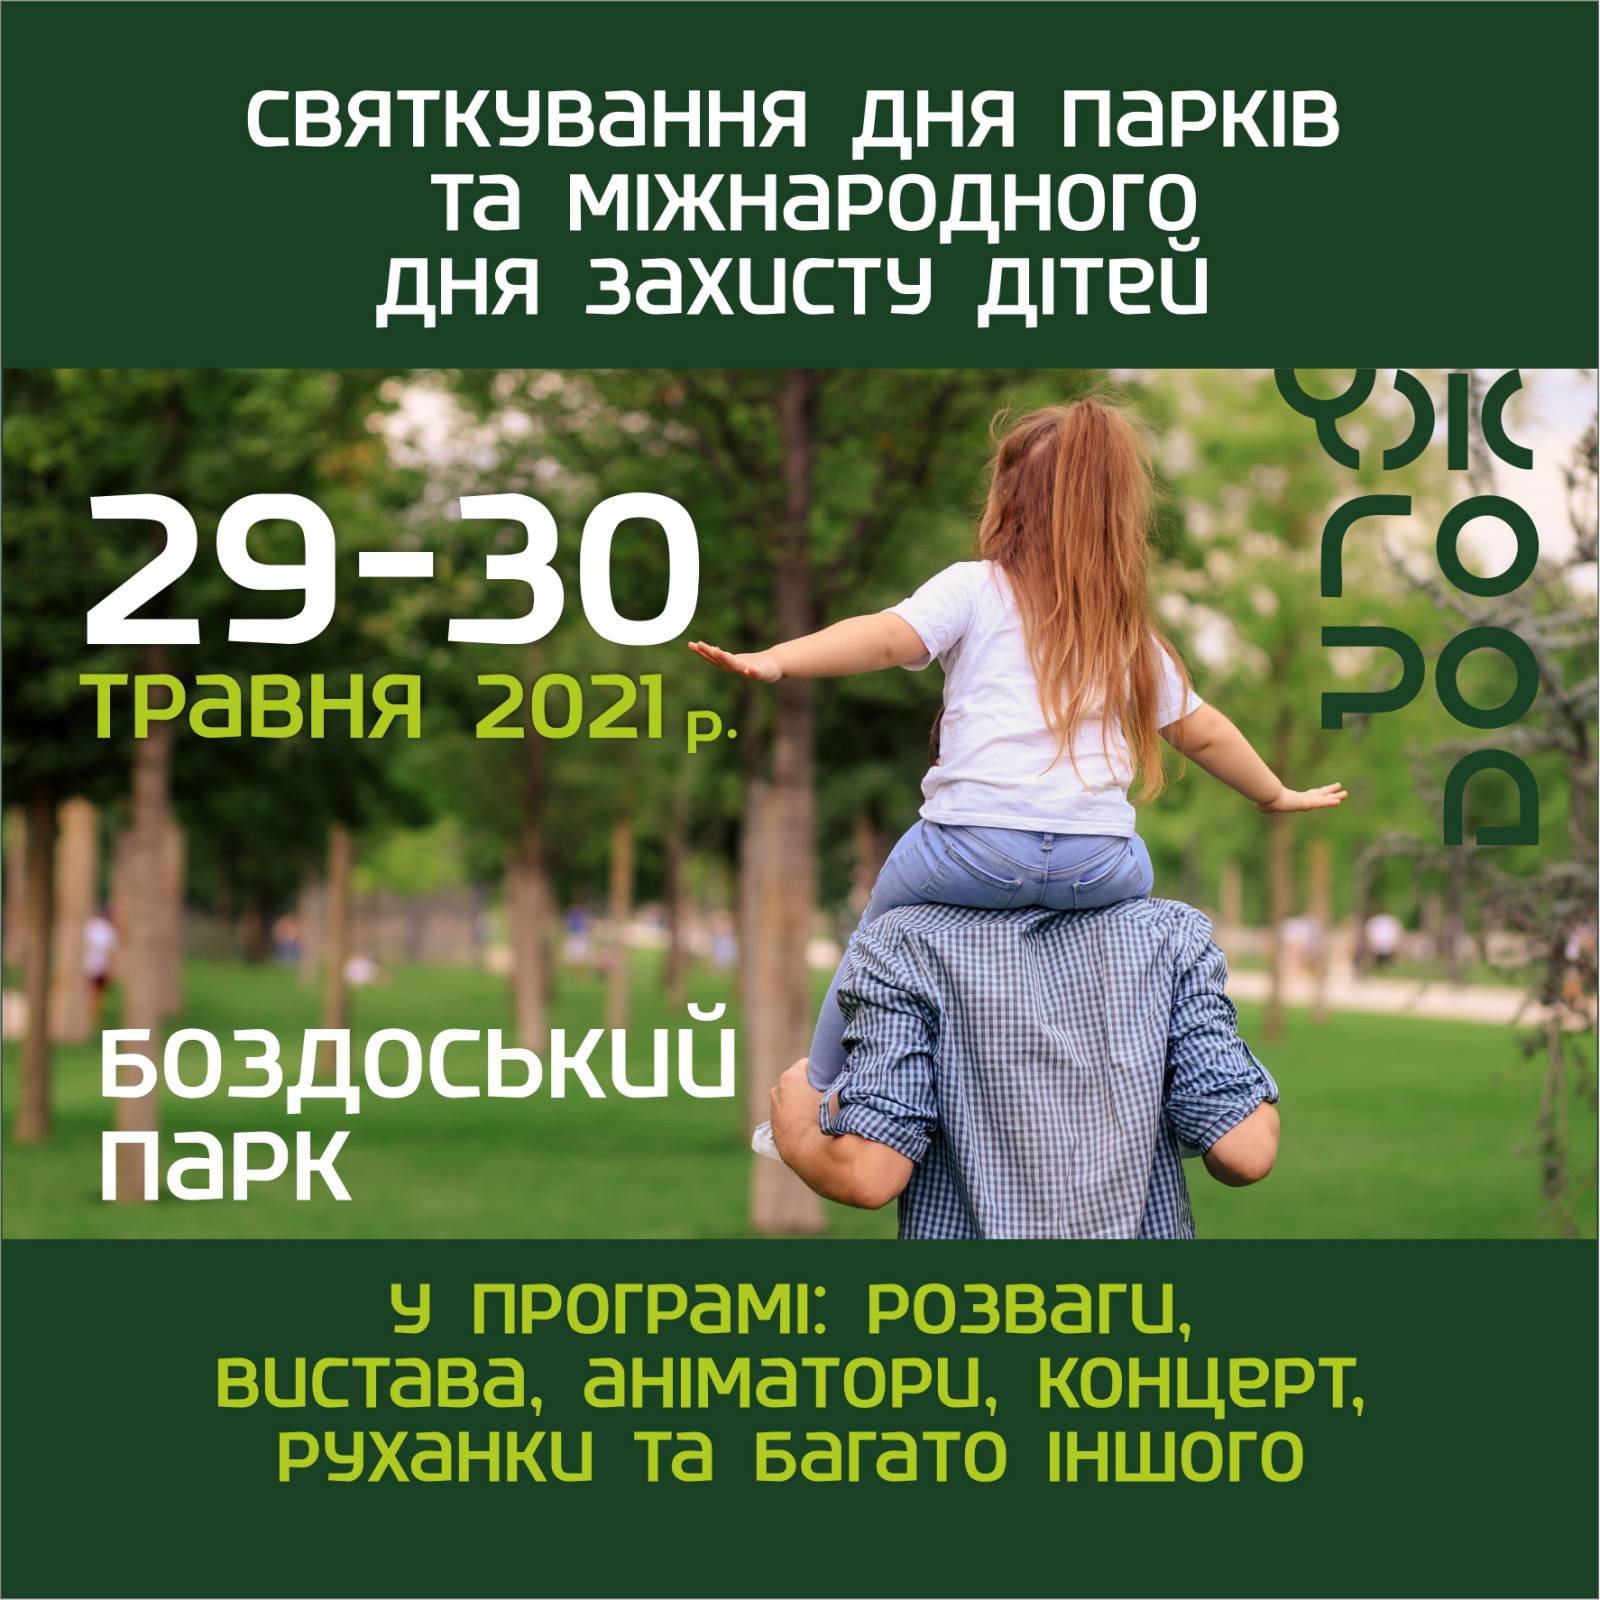 У міськраді Ужгорода оприлюднили програму святкування Міжнародного дня захисту дітей